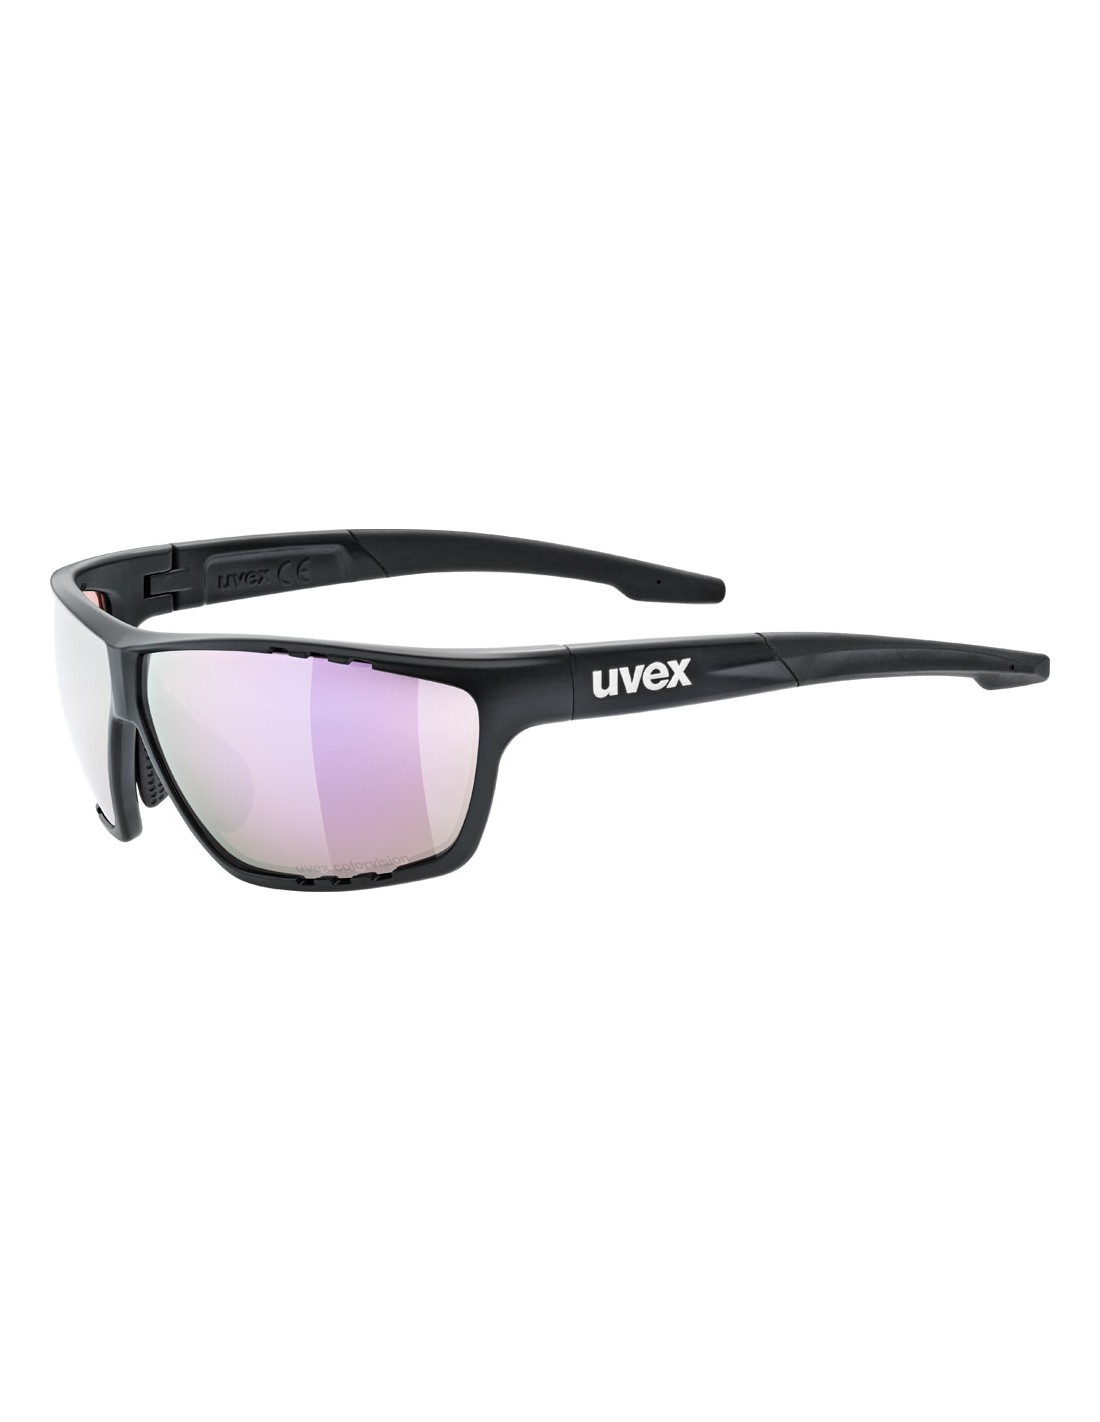 Uvex Sportbrille Sportstyle 706 CV, black matt, uvex colorvision mir. pink Cat. 3 pushy pink von Uvex